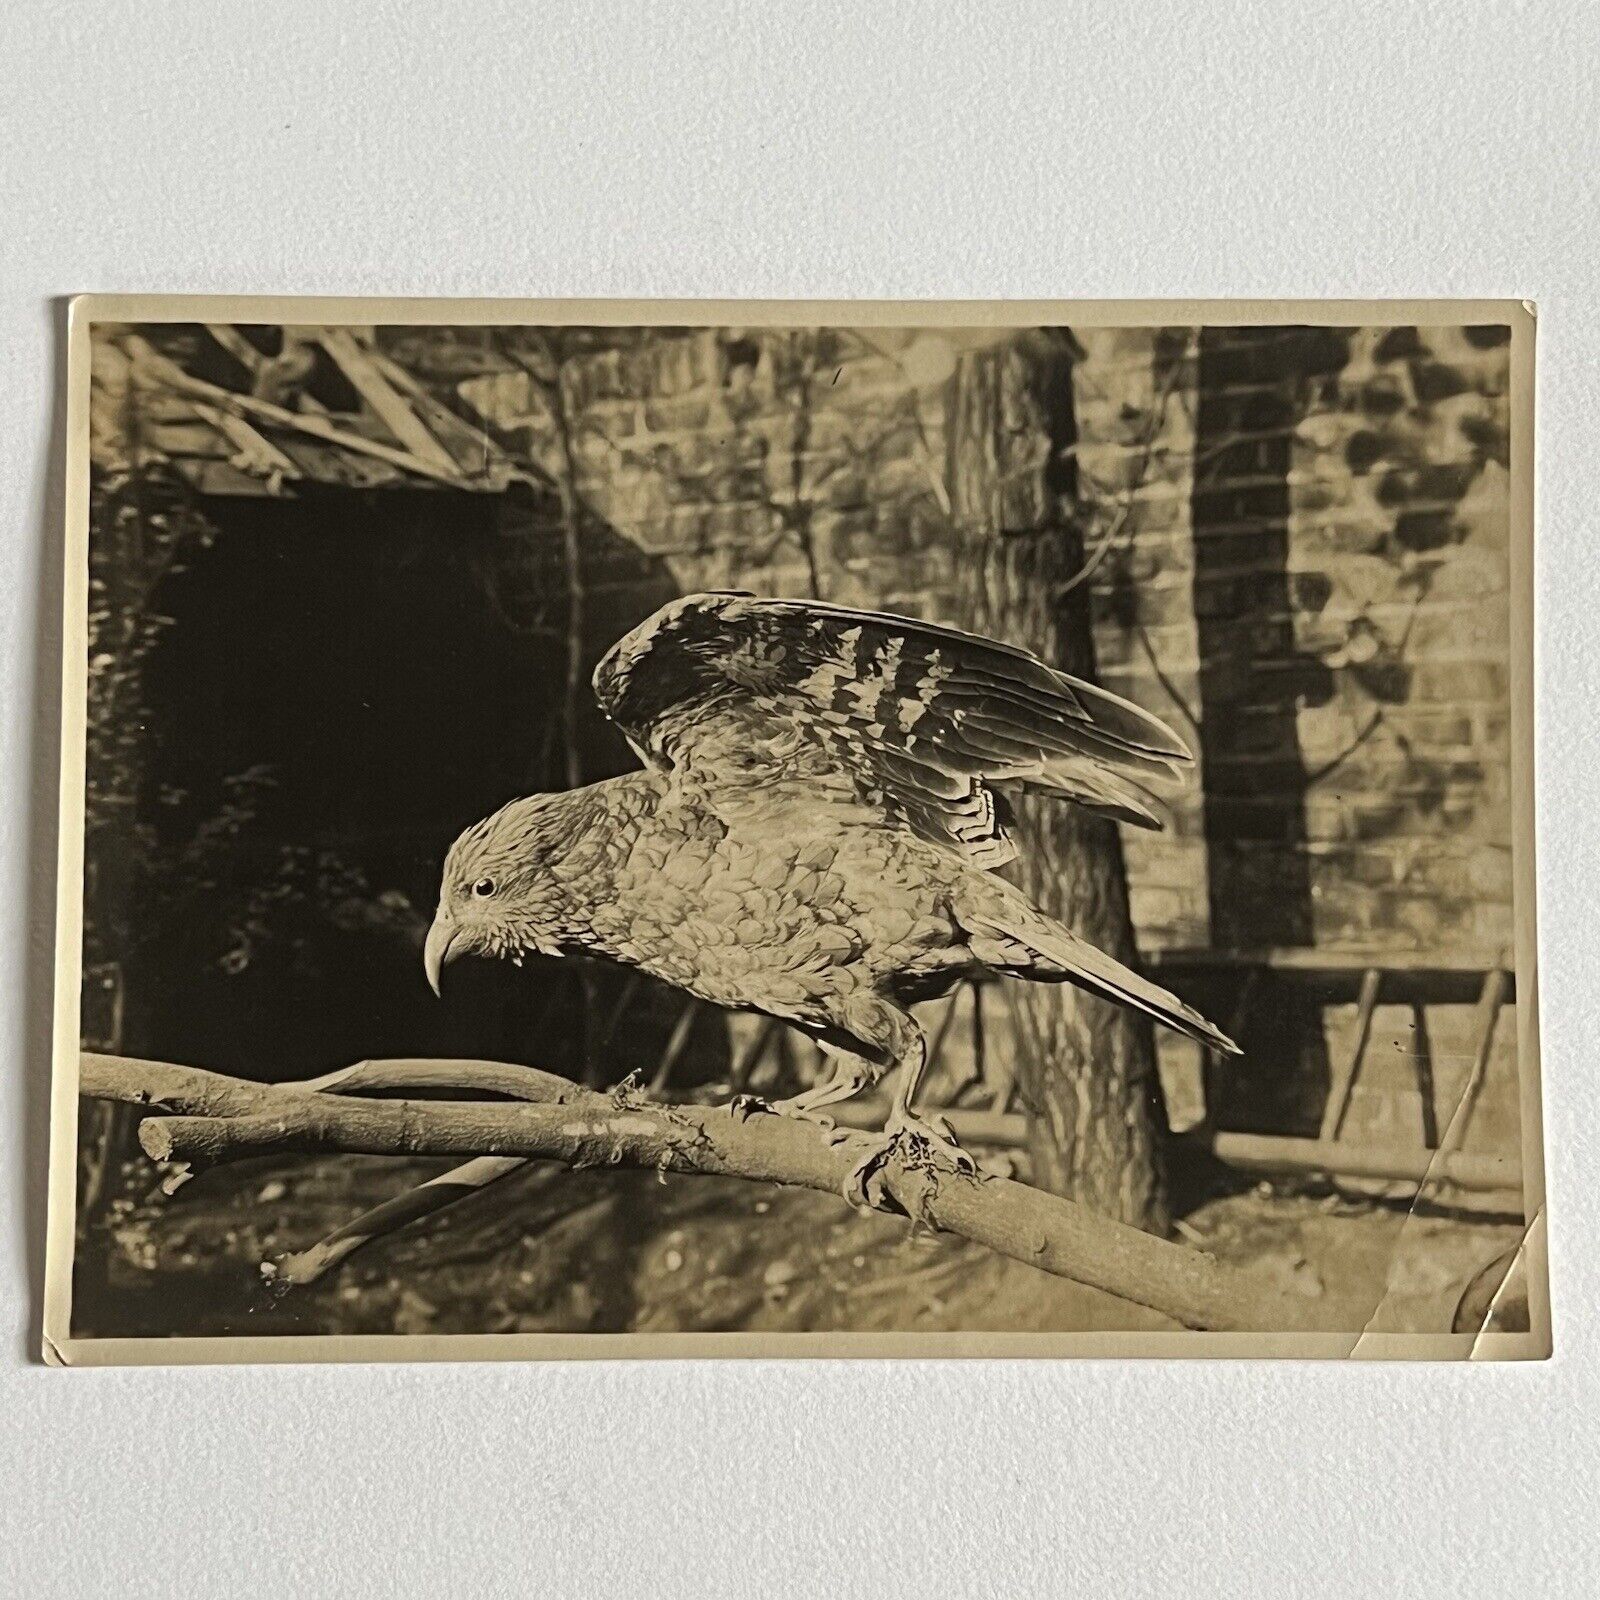 Antique Sepia Photograph Of Taxidermy Bird & Original Glass Negative Odd